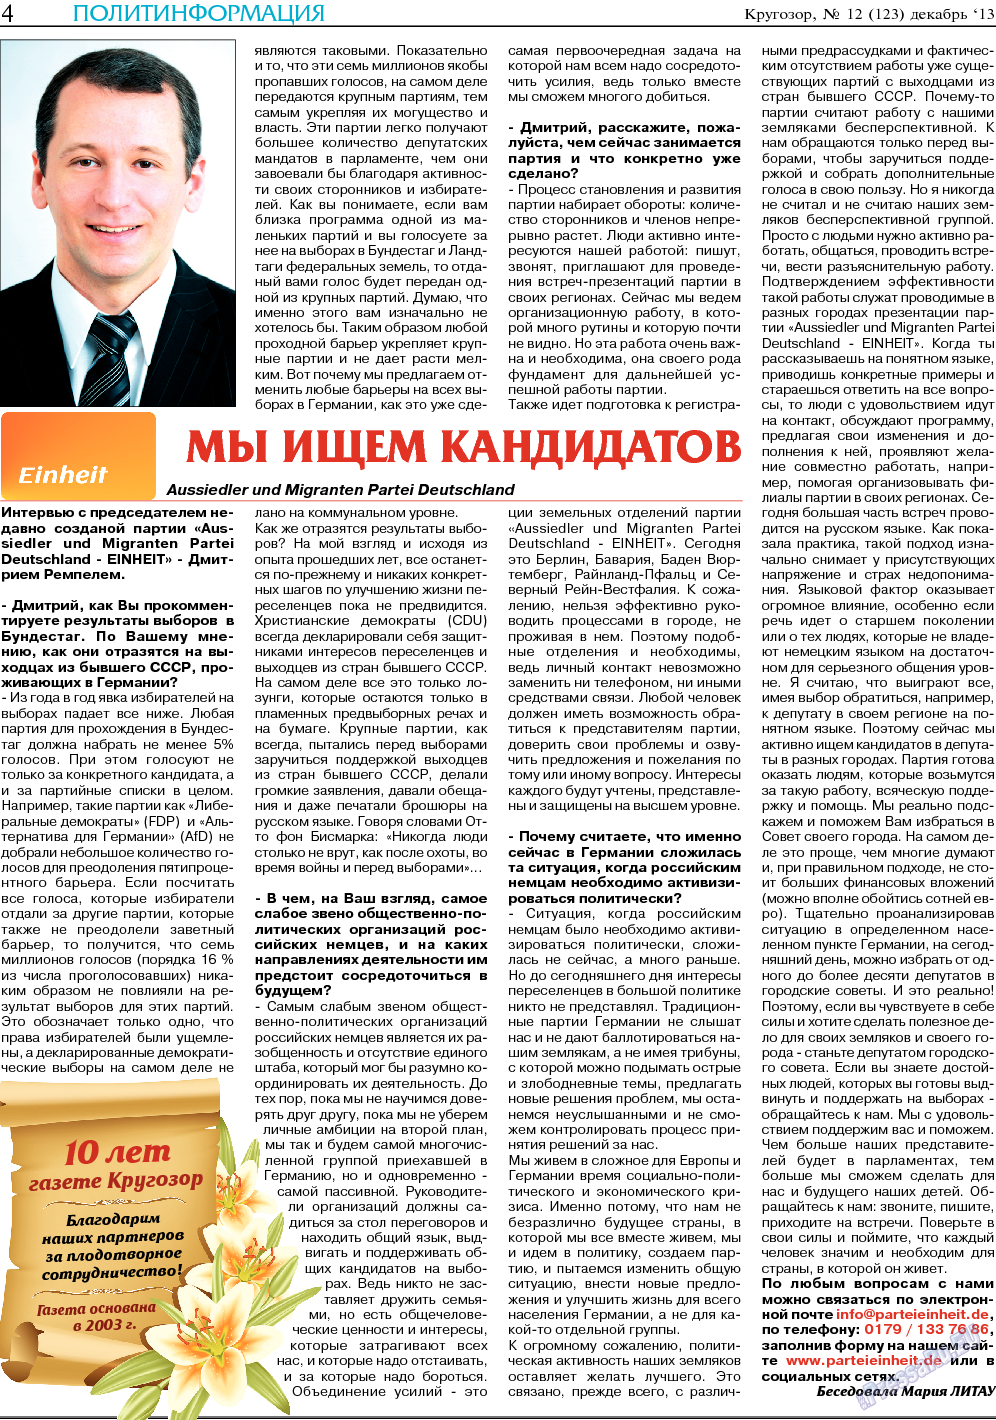 Кругозор, газета. 2013 №12 стр.4